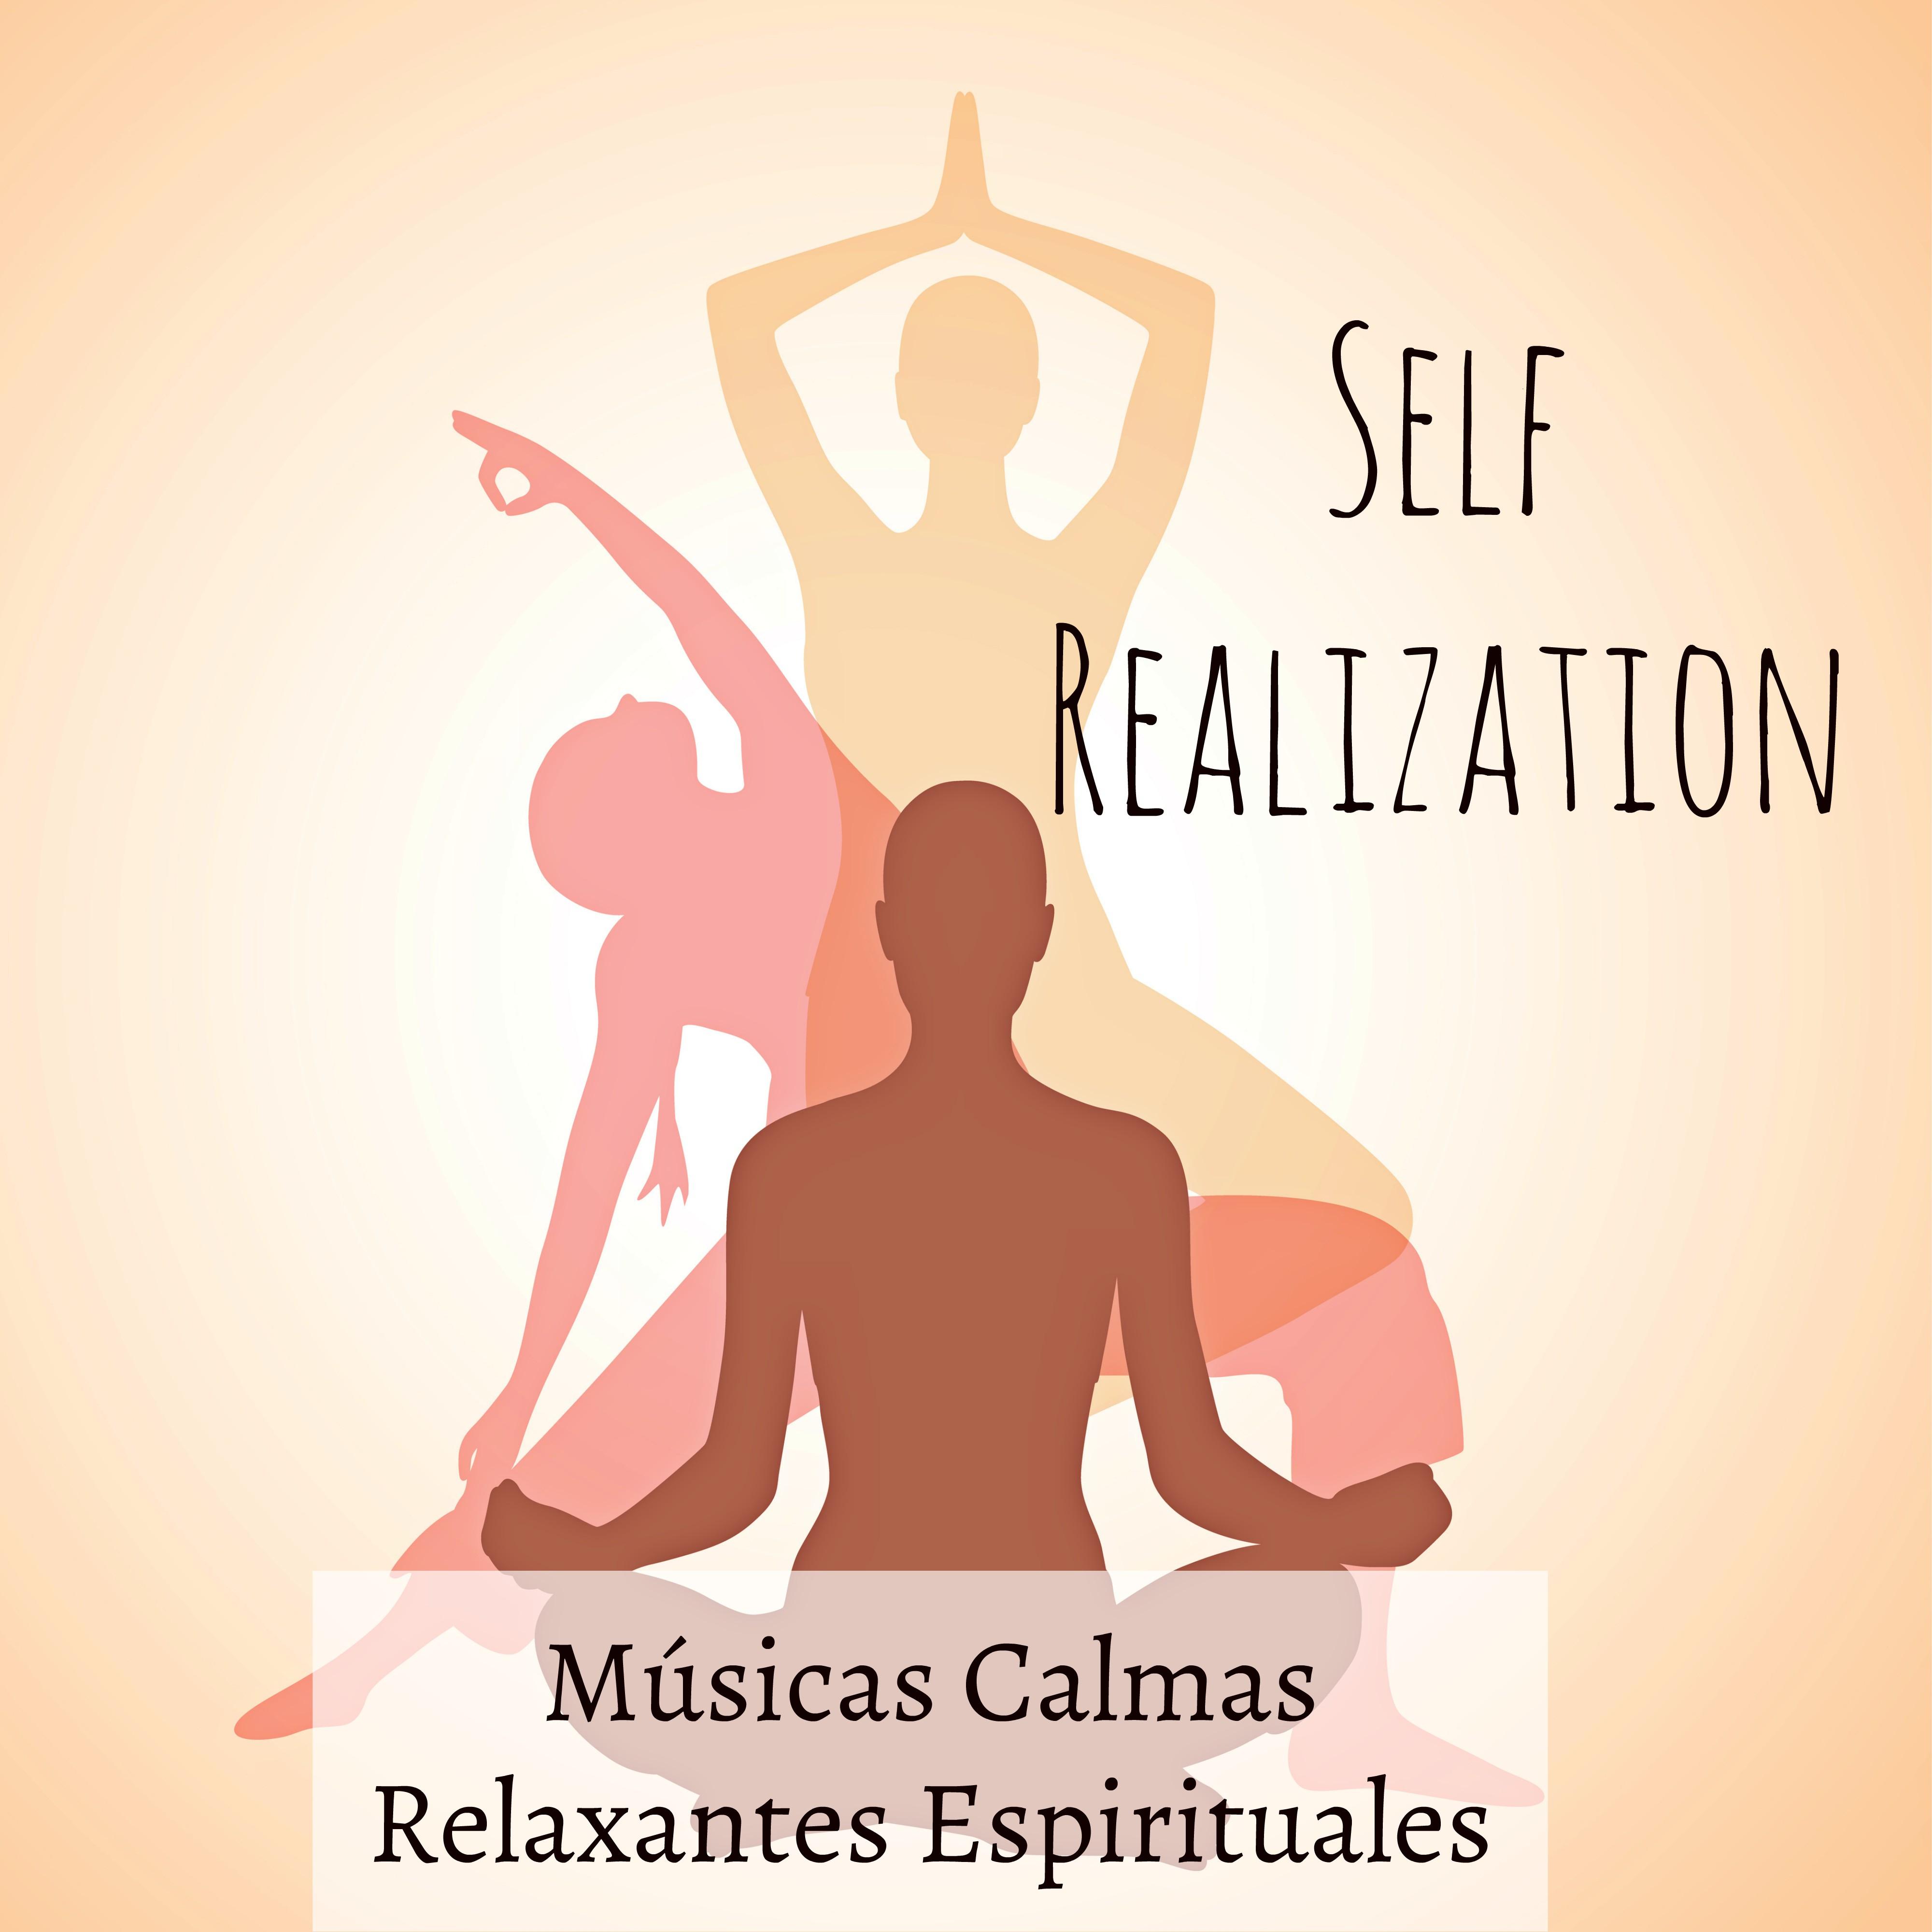 Self Realization  Mu sicas Calmas Relaxantes Espirituales para Respira o Profunda Yoga Exercicios Ciclo do Sono con Sons Instrumentais New Age